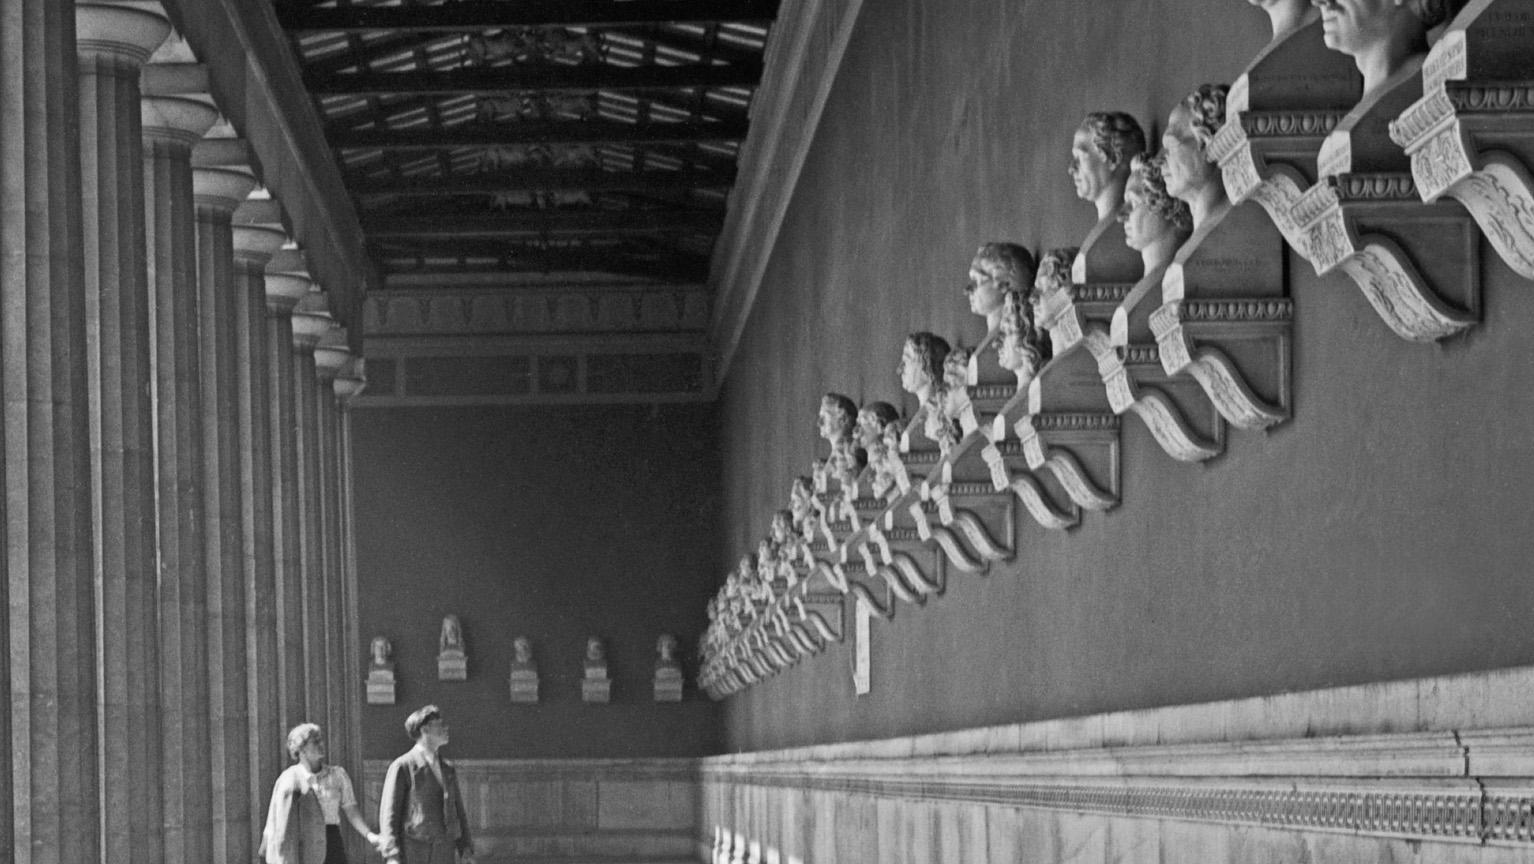 Hall of fame, bustes de célébrités, Munich, Allemagne, 1937, Imprimé plus tard - Photograph de Karl Heinrich Lämmel